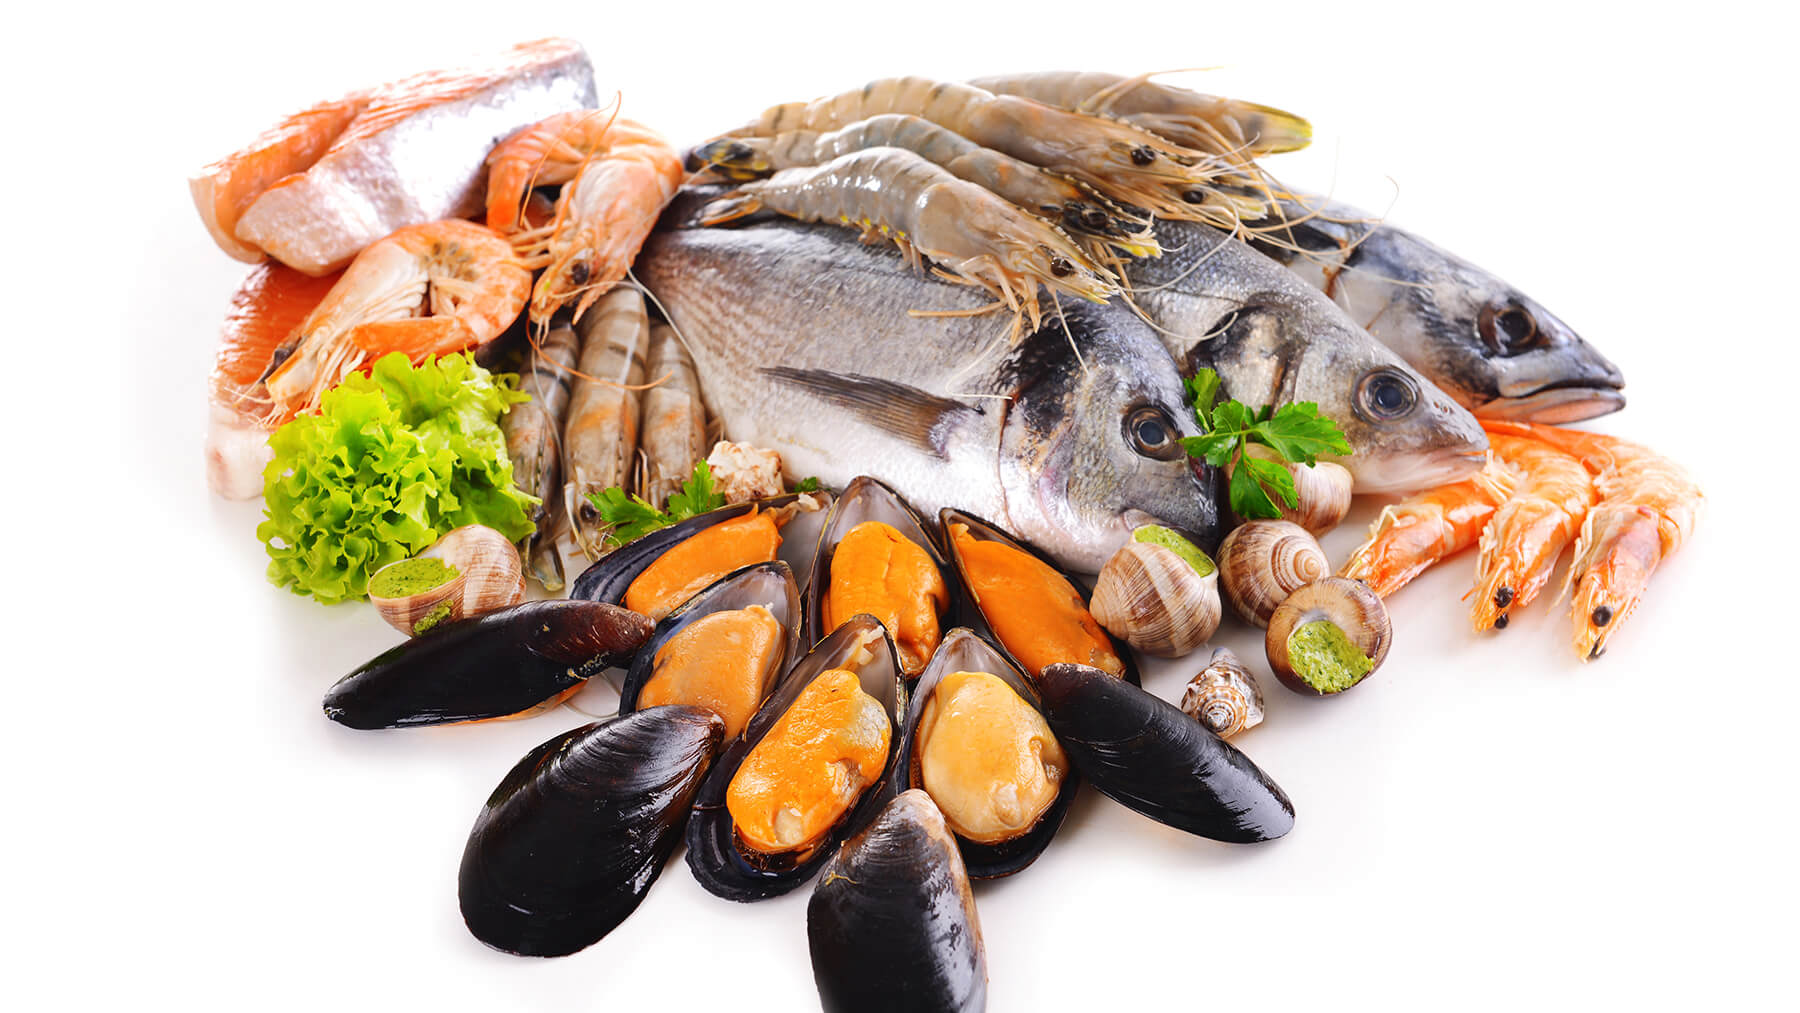 الاسماك و المحار من الاطعمة التي تسبب التسمم الغذائي 